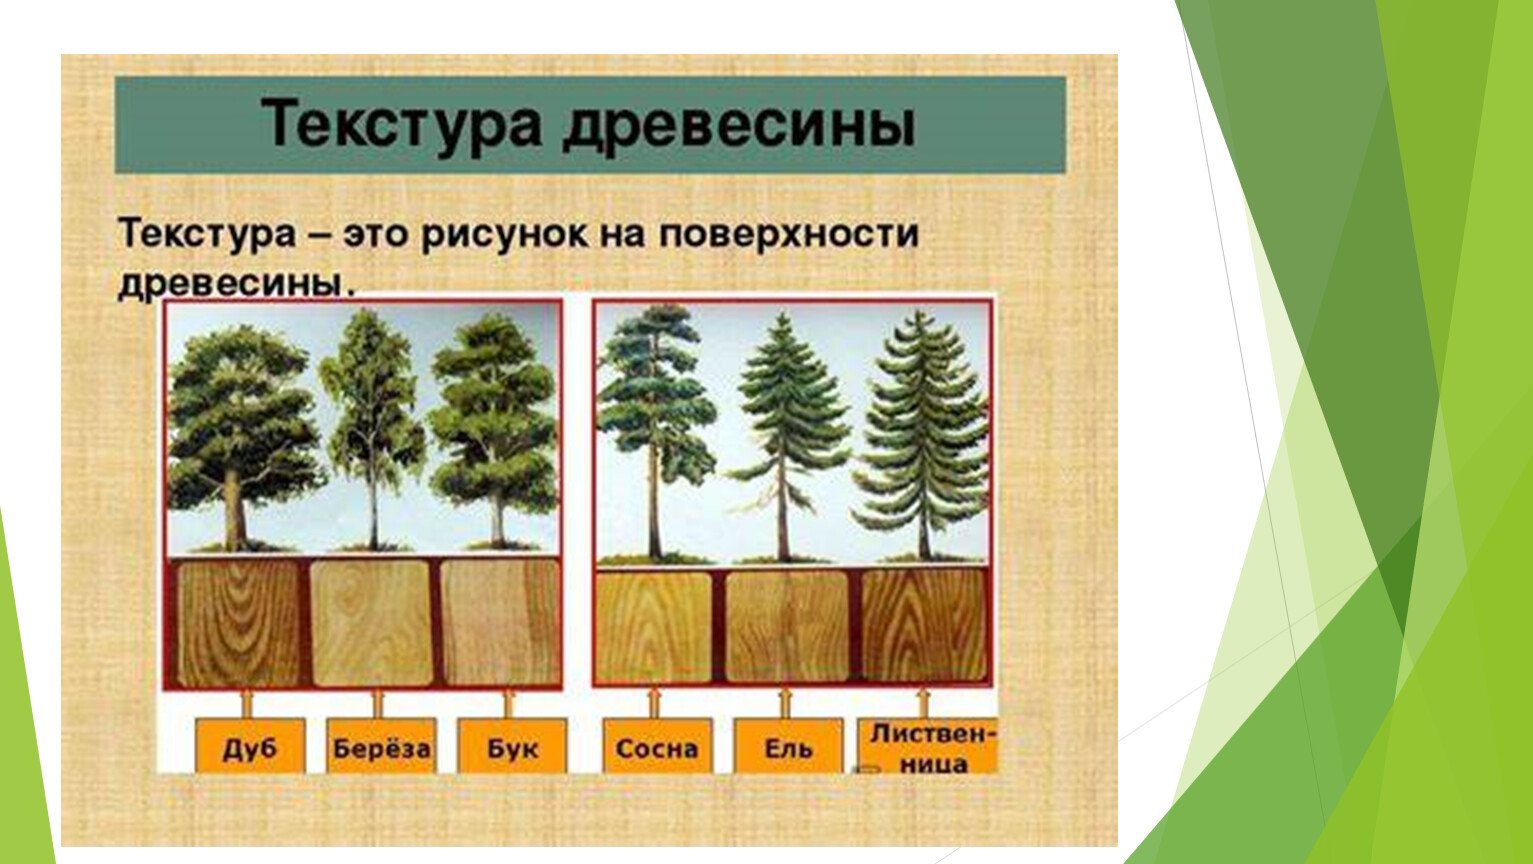 Основные лесные породы. Образцы древесины. Лиственные породы древесины. Текстура лиственных пород древесины. Хвойные и лиственные породы деревьев.